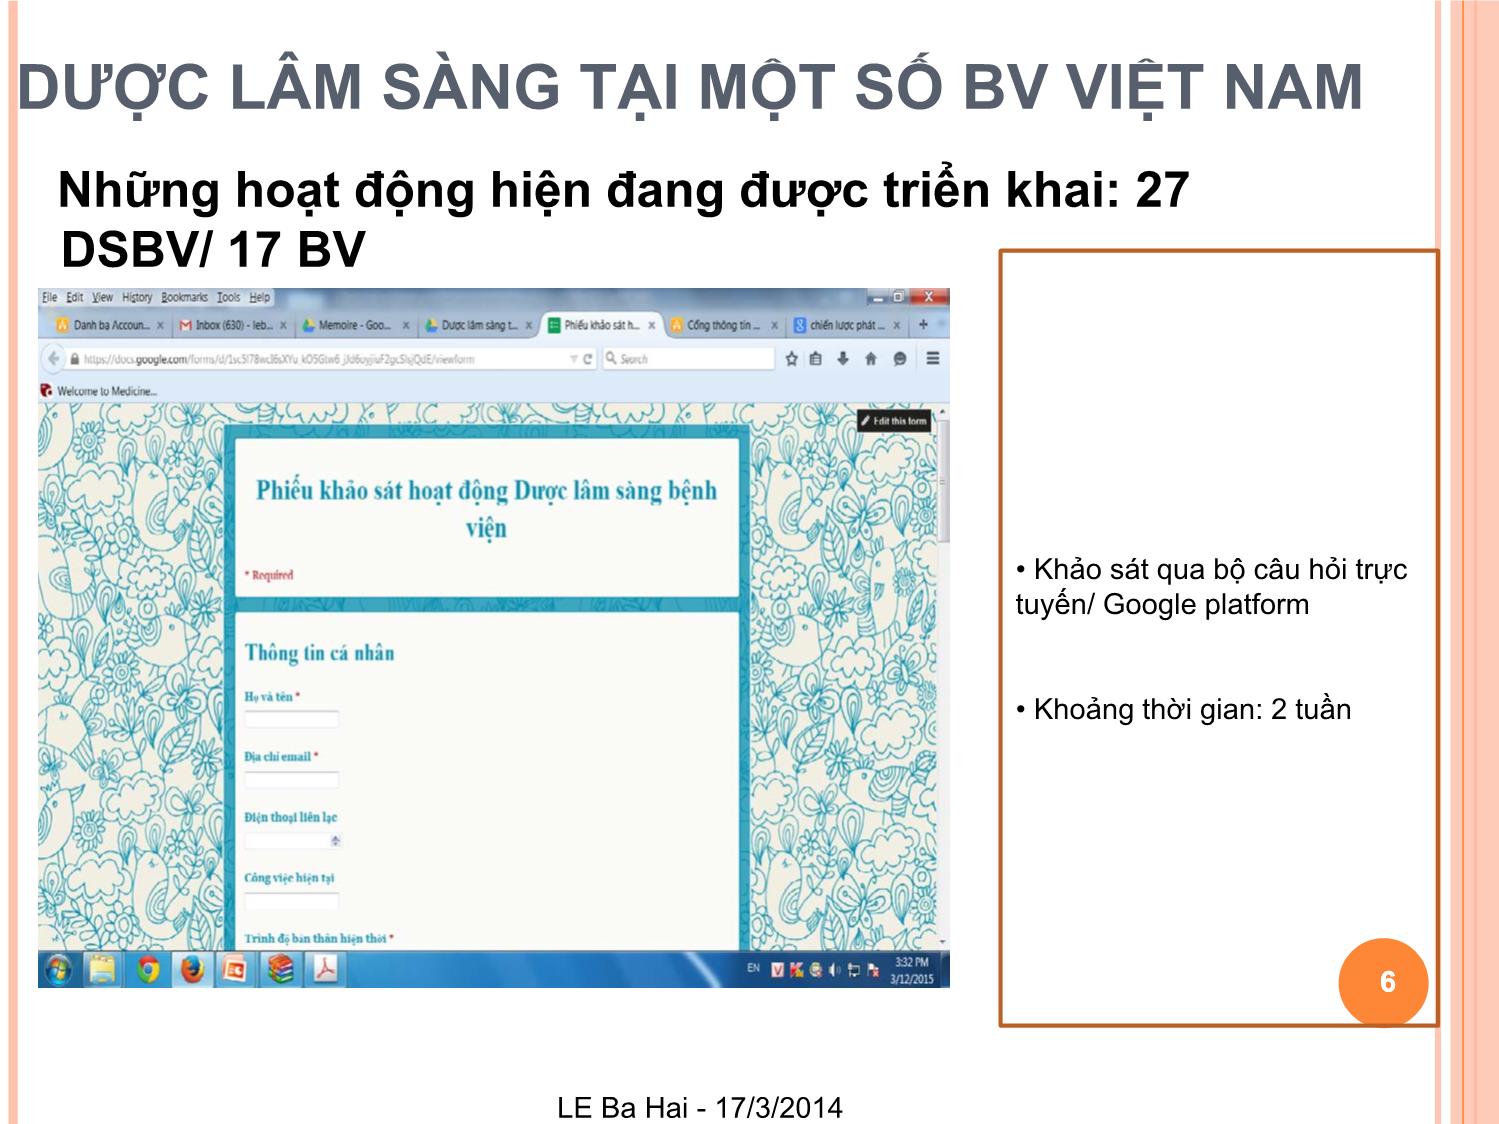 Dược lâm sàng tại bệnh viện Việt Nam: Khảo sát về những dịch vụ đang được triển khai của dược lâm sàng và cơ hội phát triển trang 6